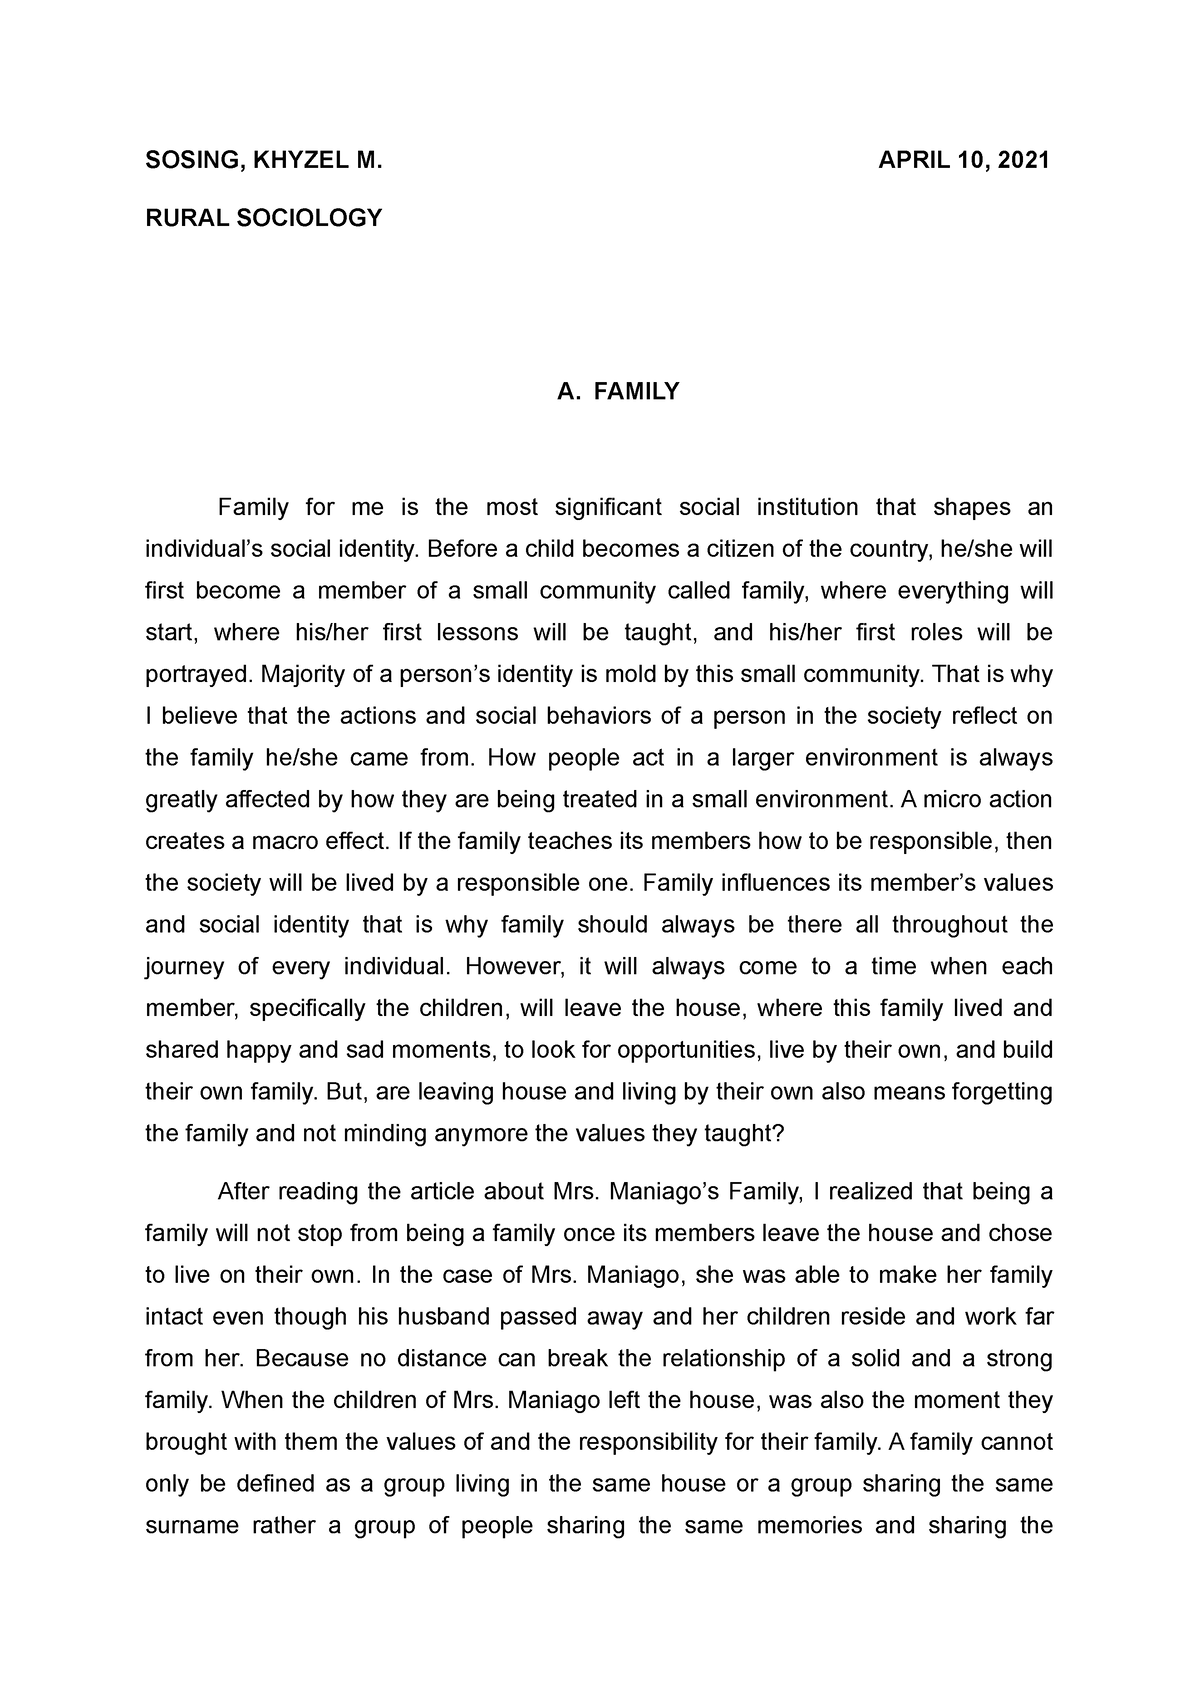 an essay on ideal family